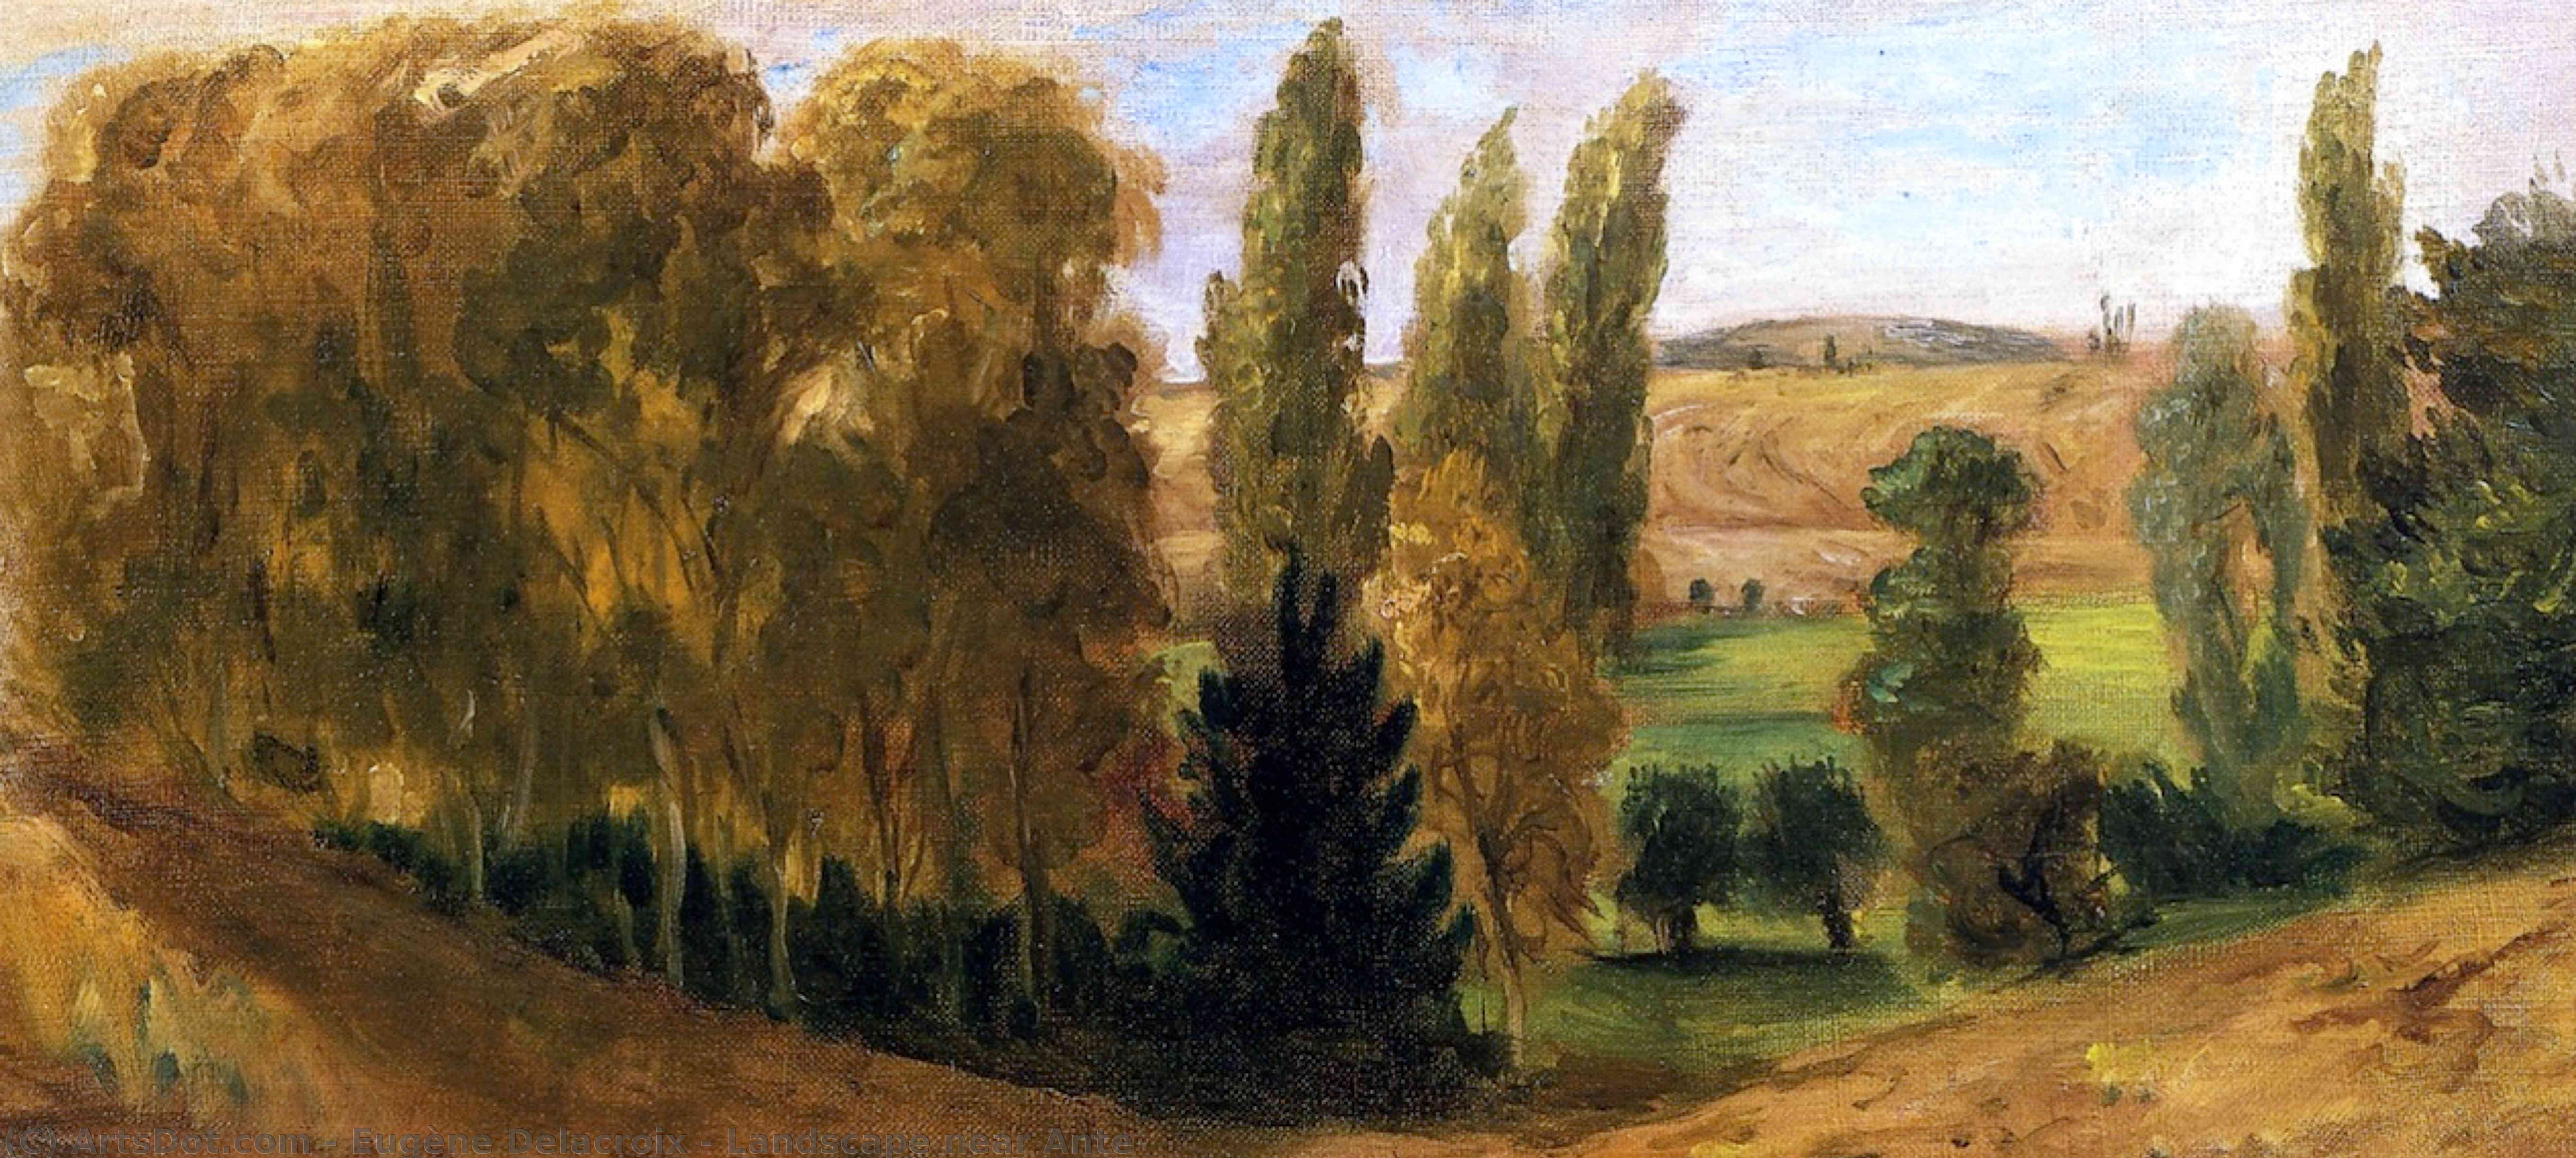 WikiOO.org - אנציקלופדיה לאמנויות יפות - ציור, יצירות אמנות Eugène Delacroix - Landscape near Ante